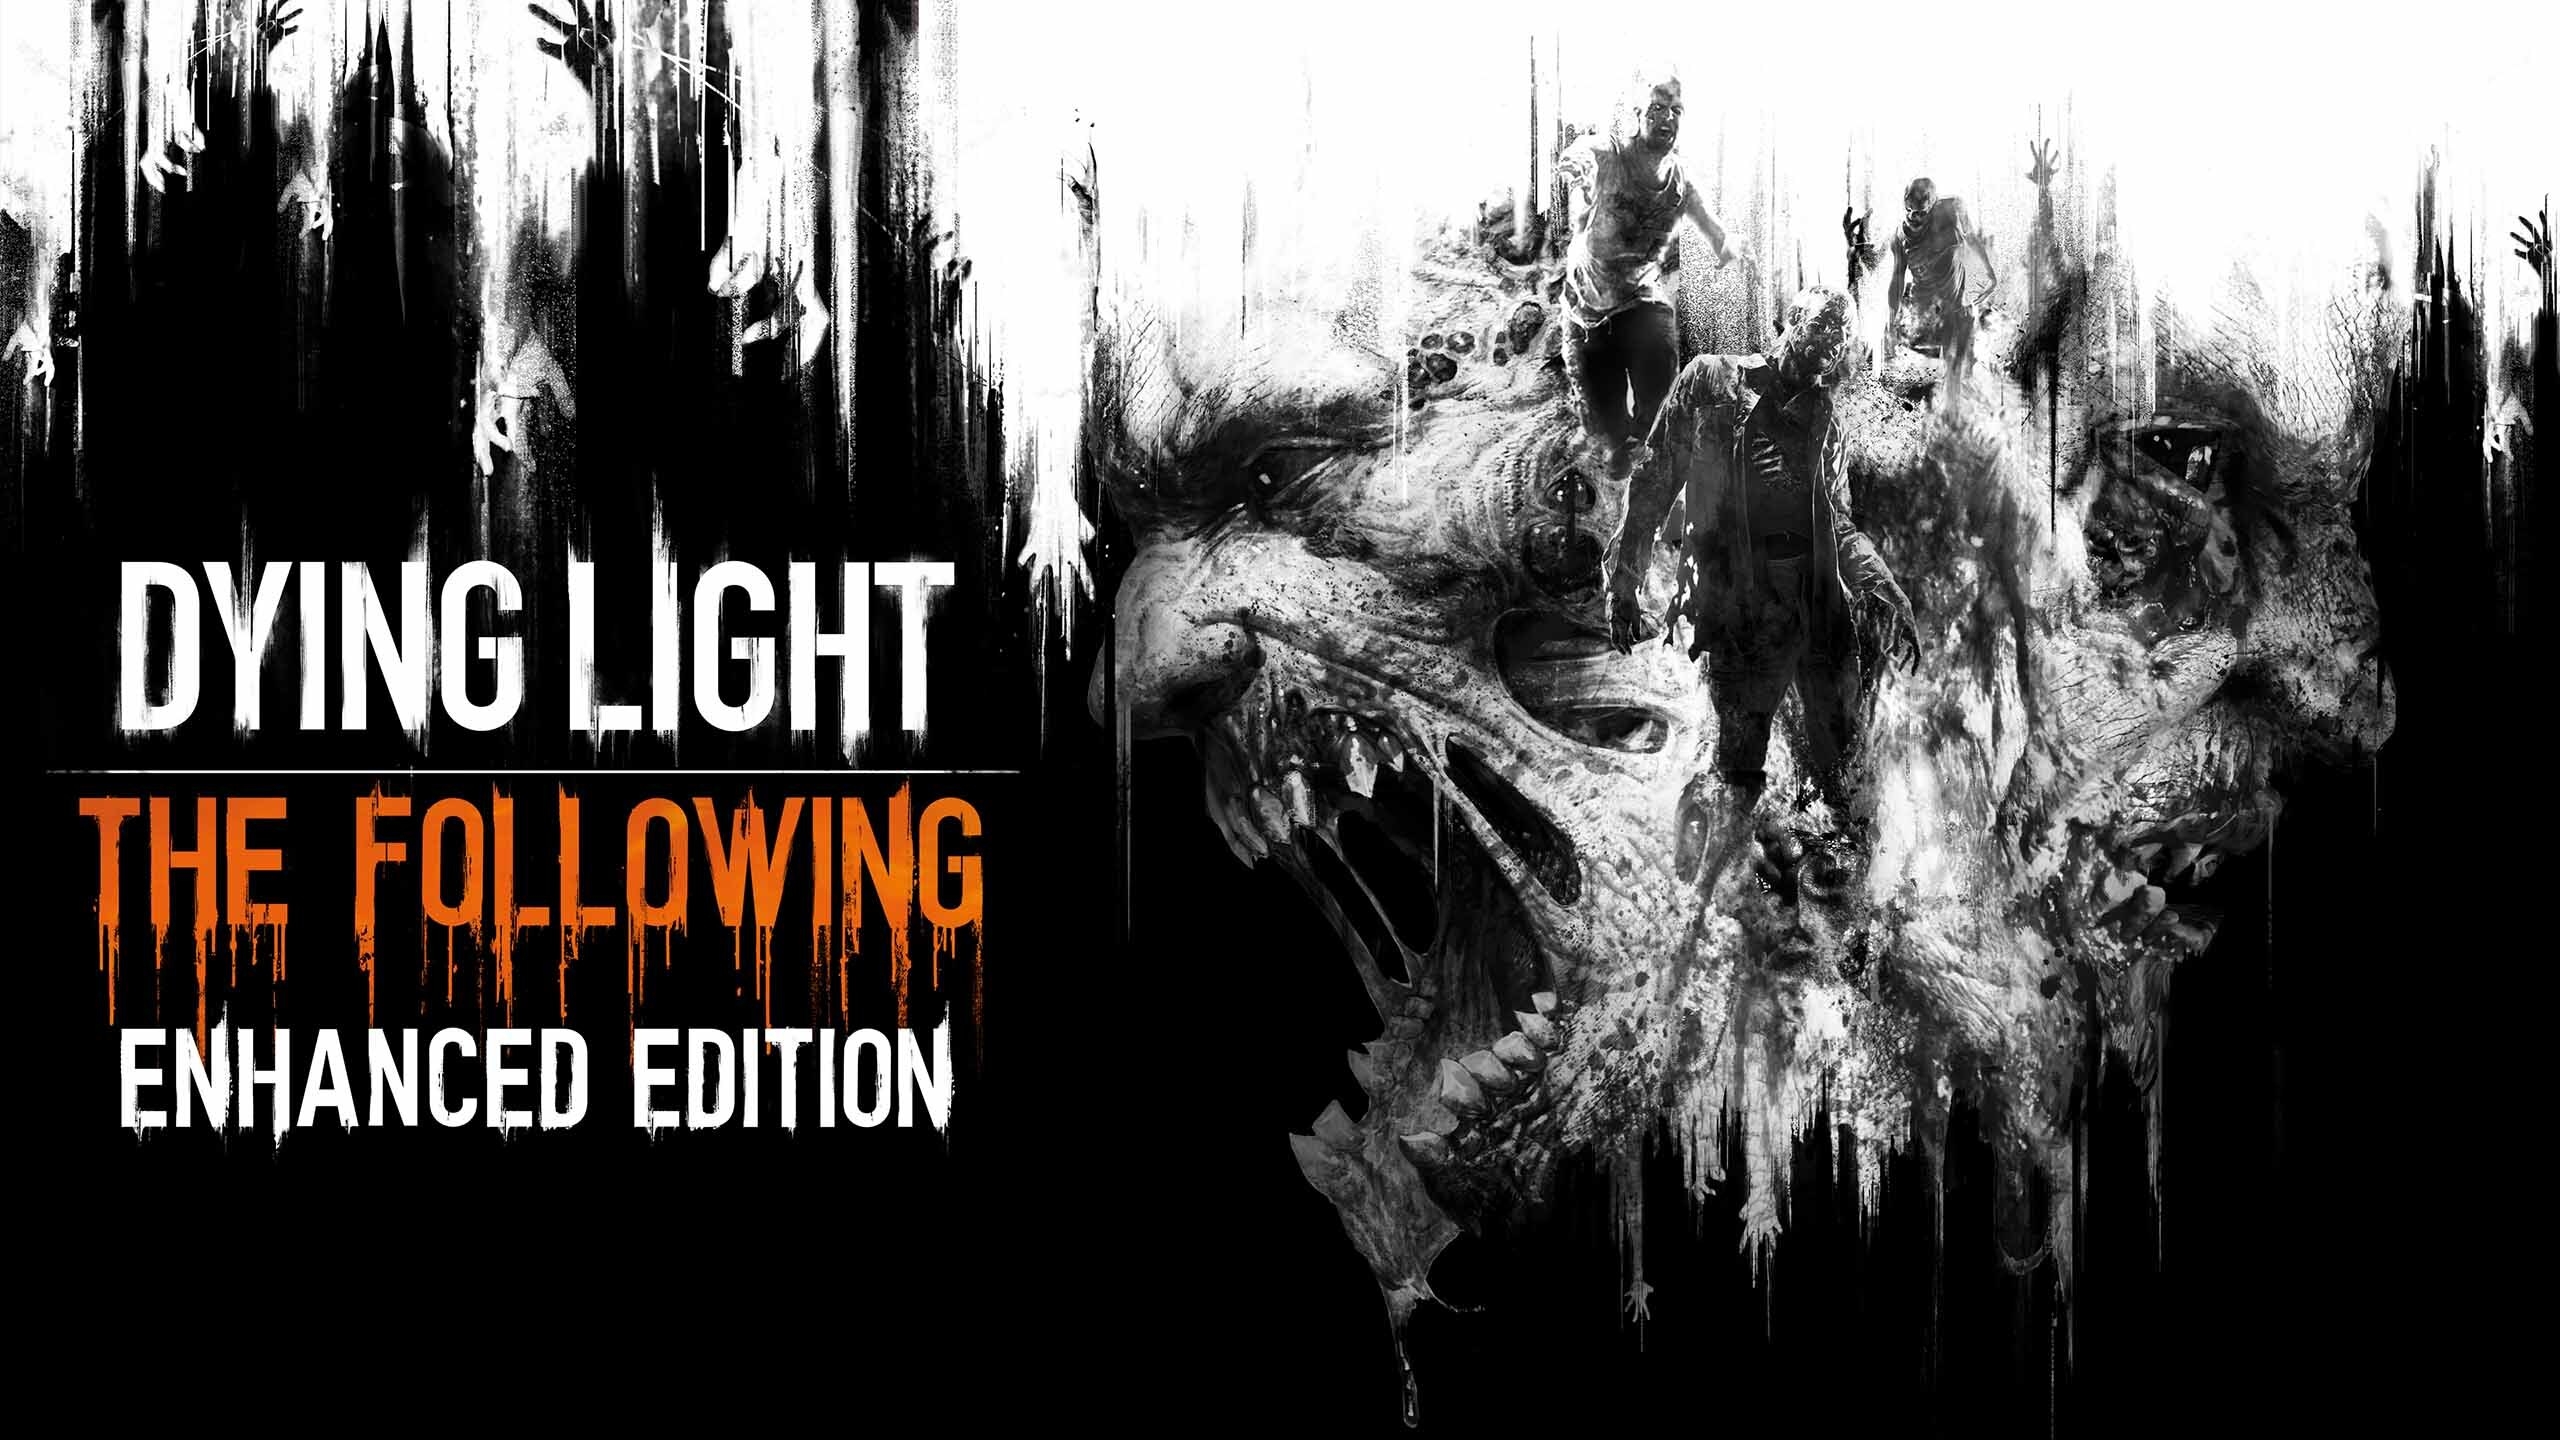 Dying Light Wallpaper Pack on Steam